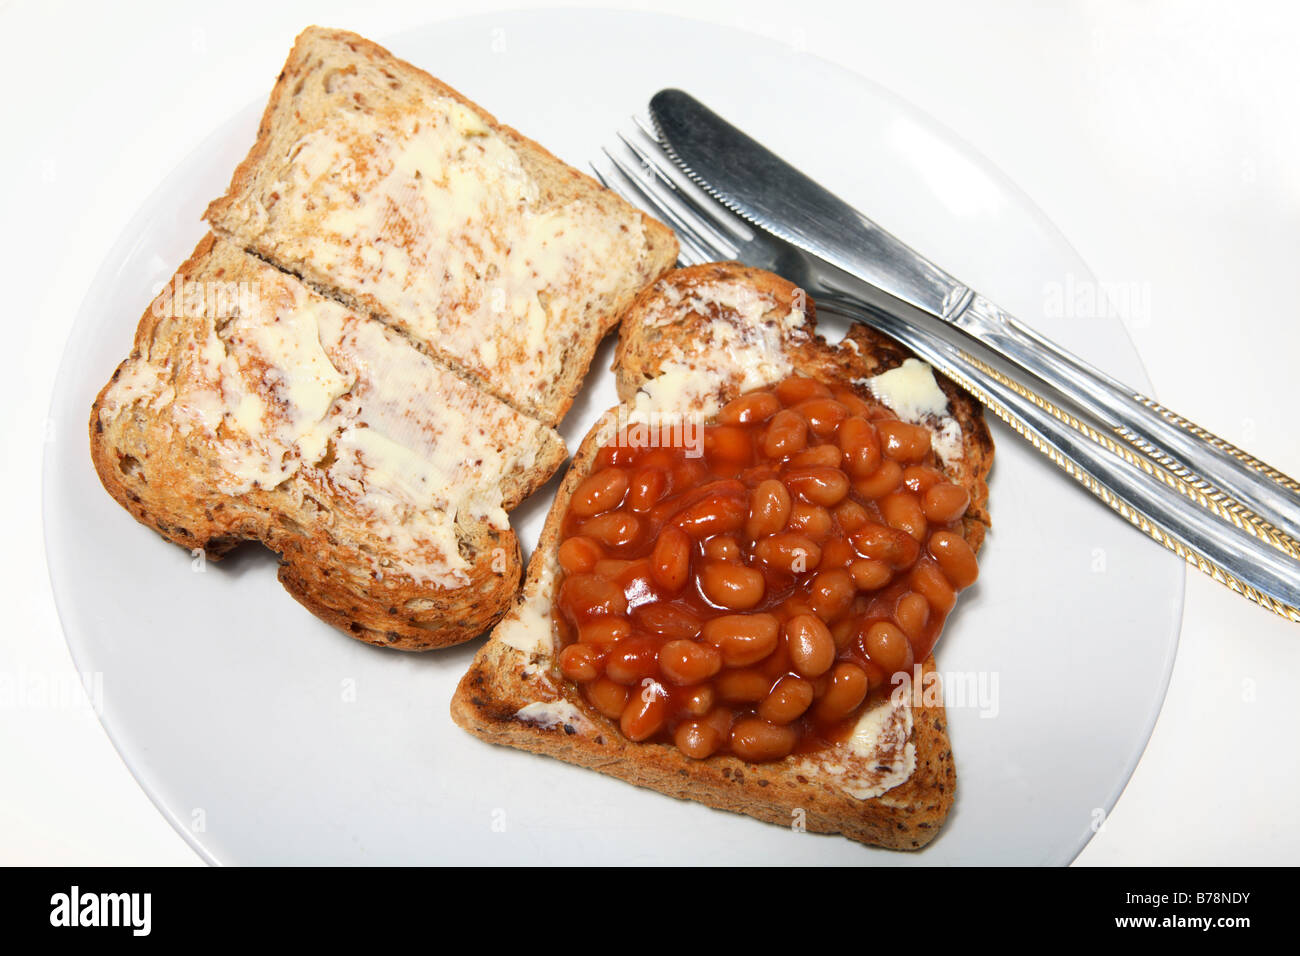 Bohnen auf Buttertoast mit einem Messer und Gabel - eine billige, tägliche Mahlzeit Stockfoto